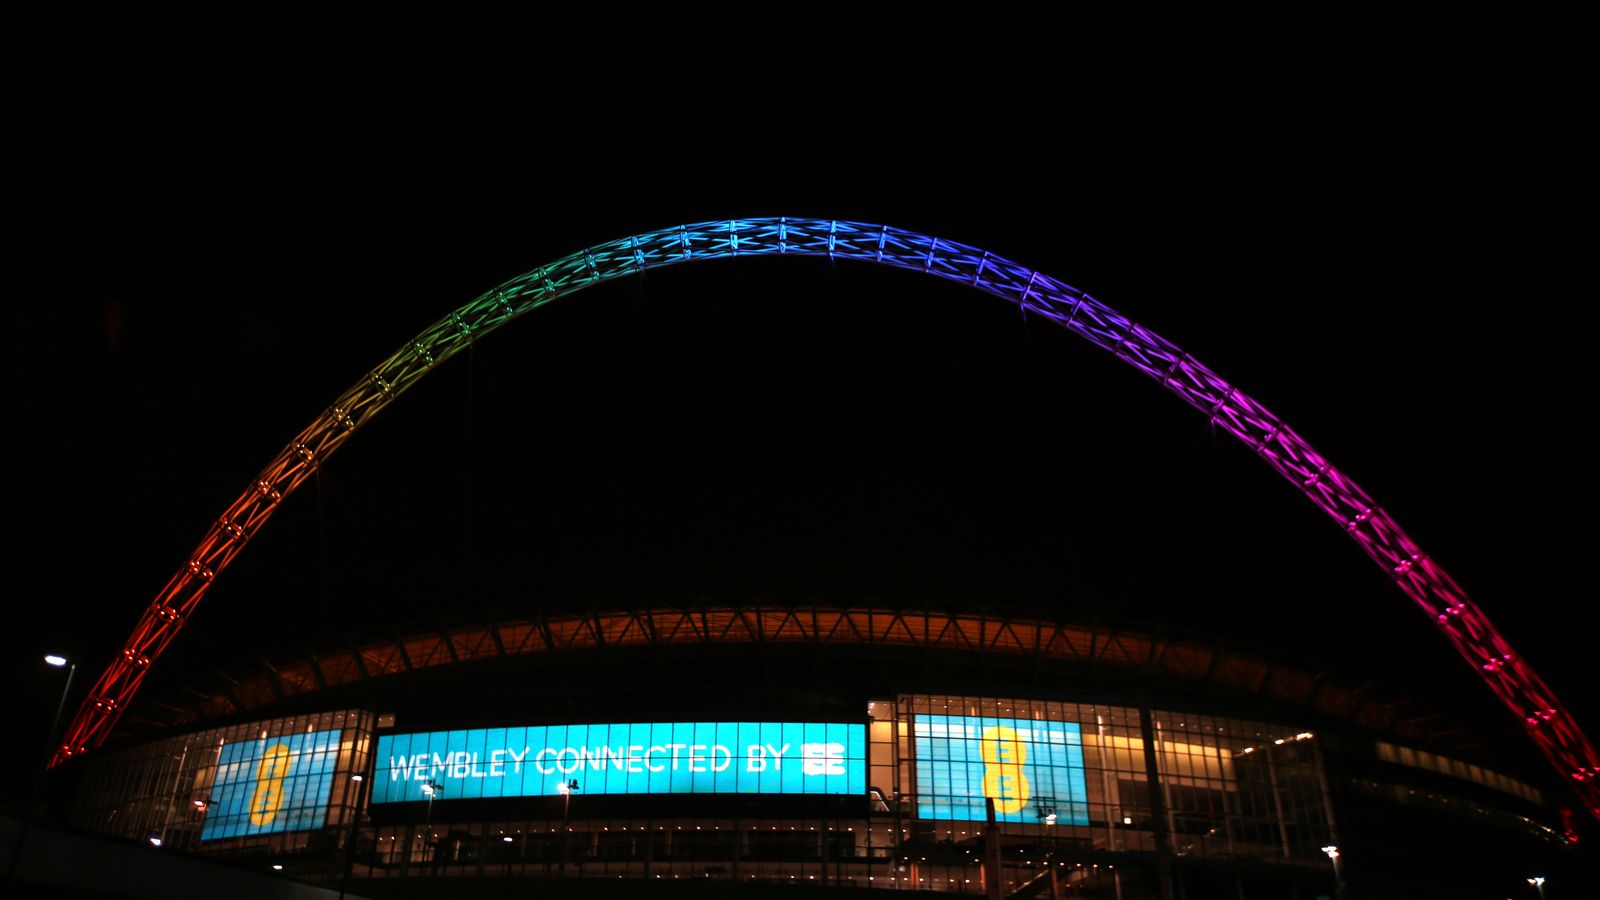 Le stade de Wembley ne sera plus éclairé pour marquer les attaques terroristes et les problèmes sociaux |  Nouvelles du Royaume-Uni